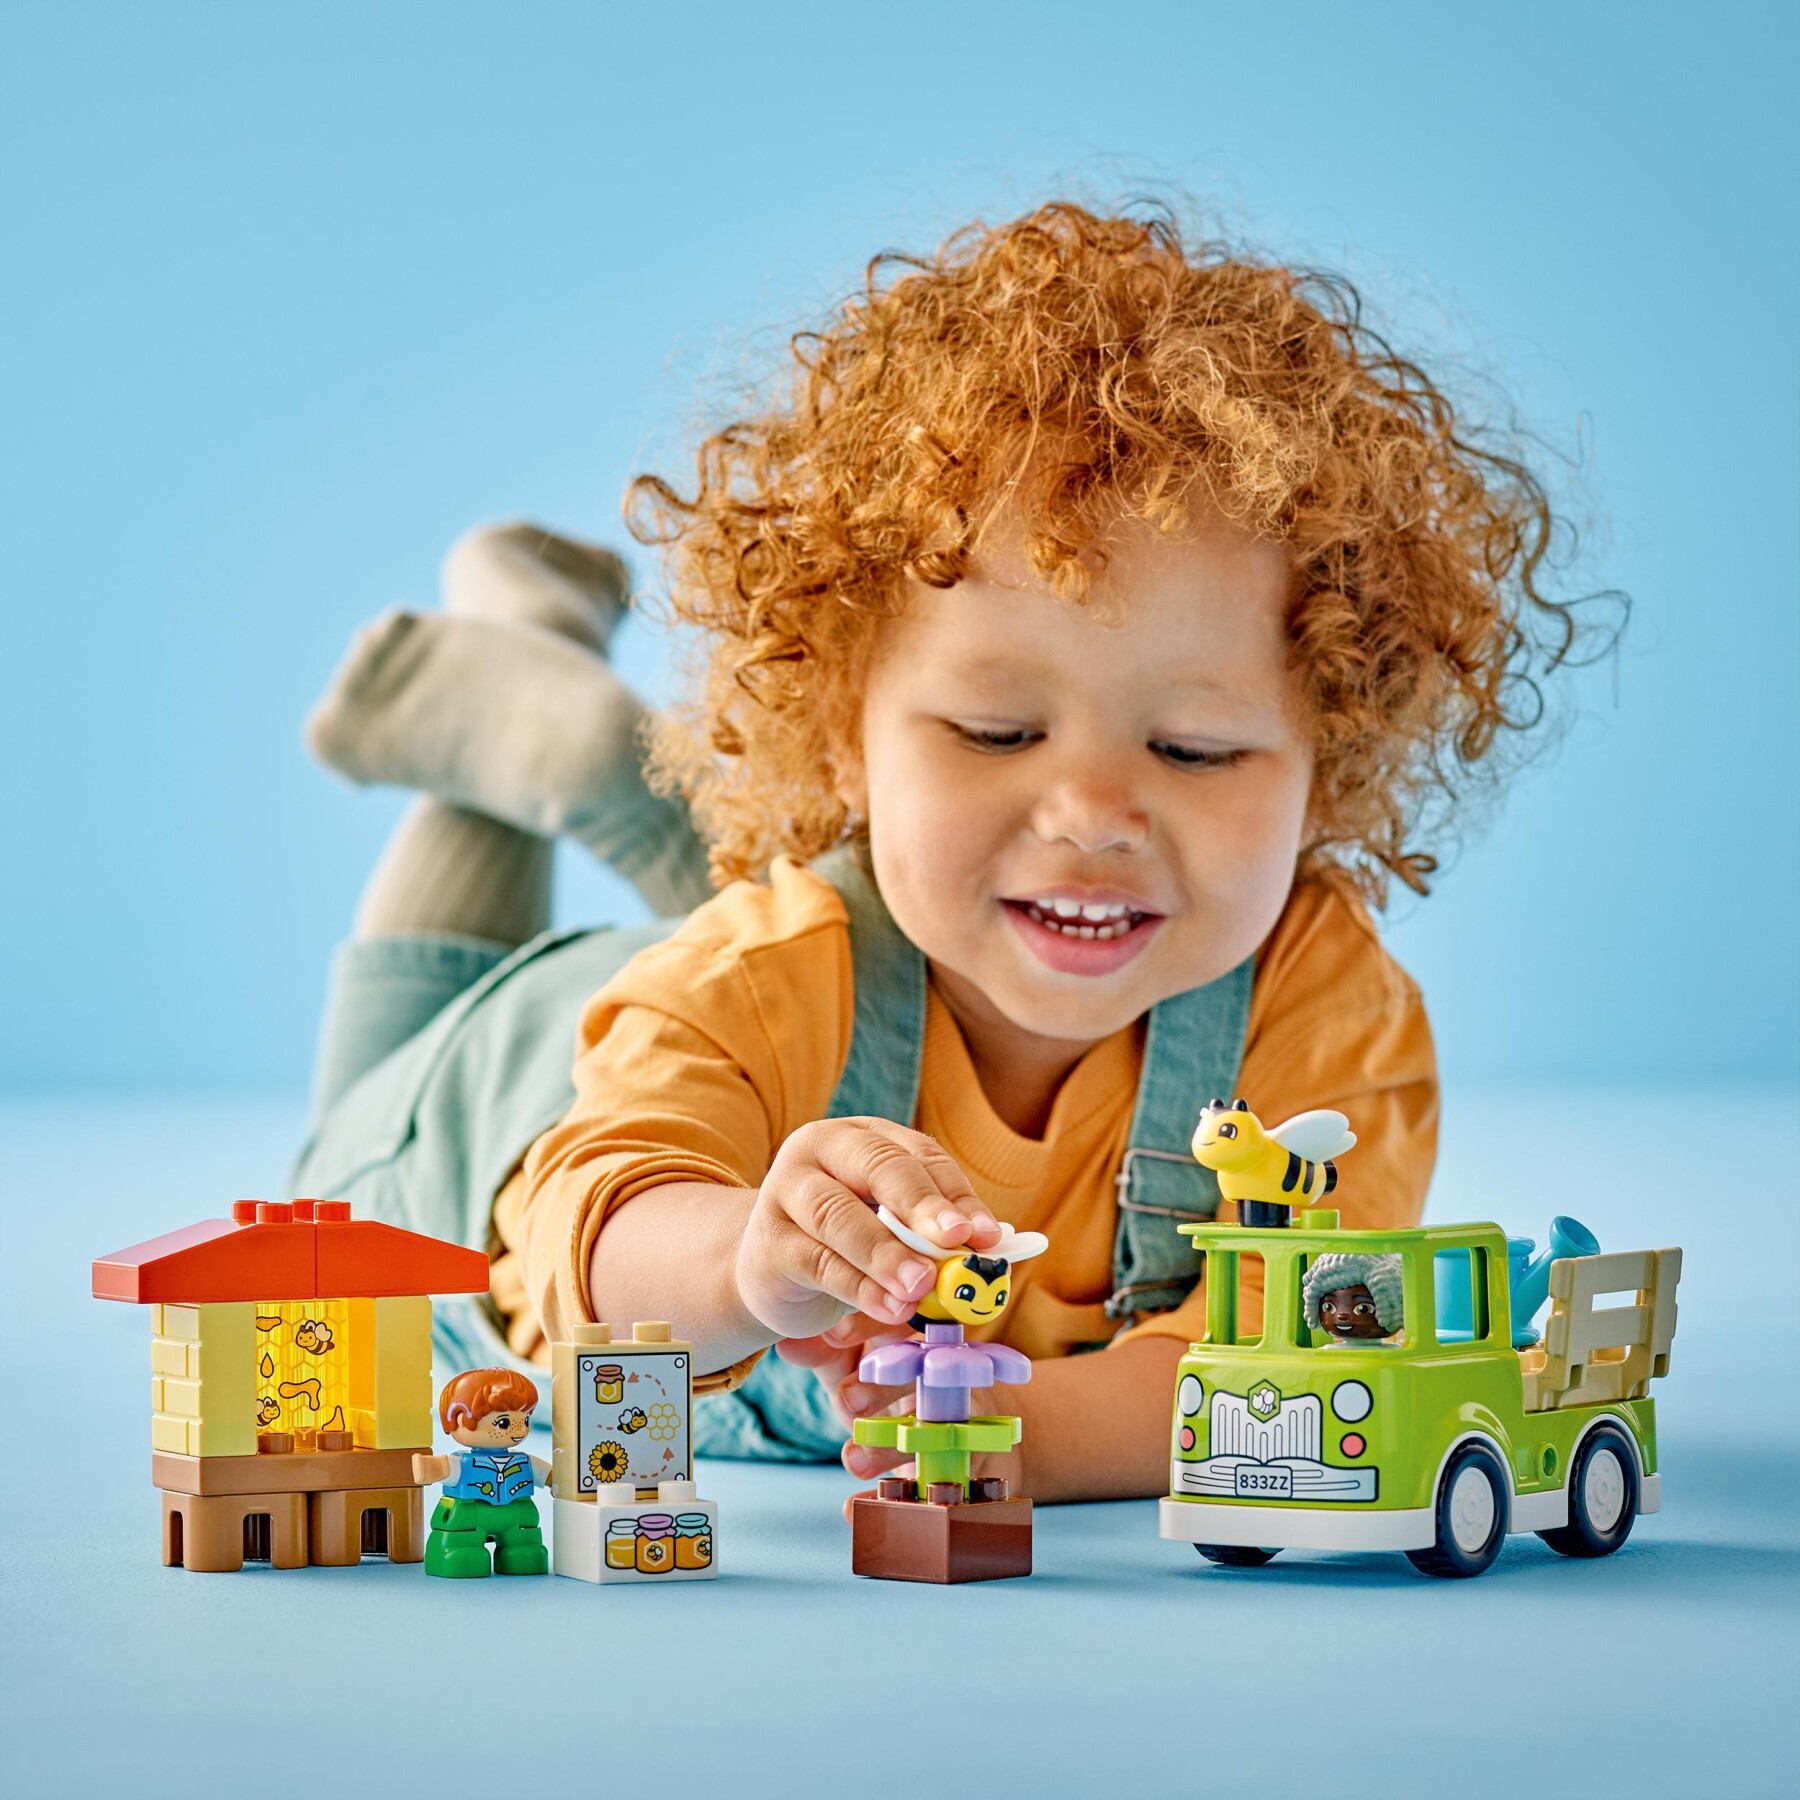 Lego duplo 10419 cura di api e alveari, gioco educativo per bambini in età prescolare con 2 personaggi e un camion giocattolo - LEGO DUPLO